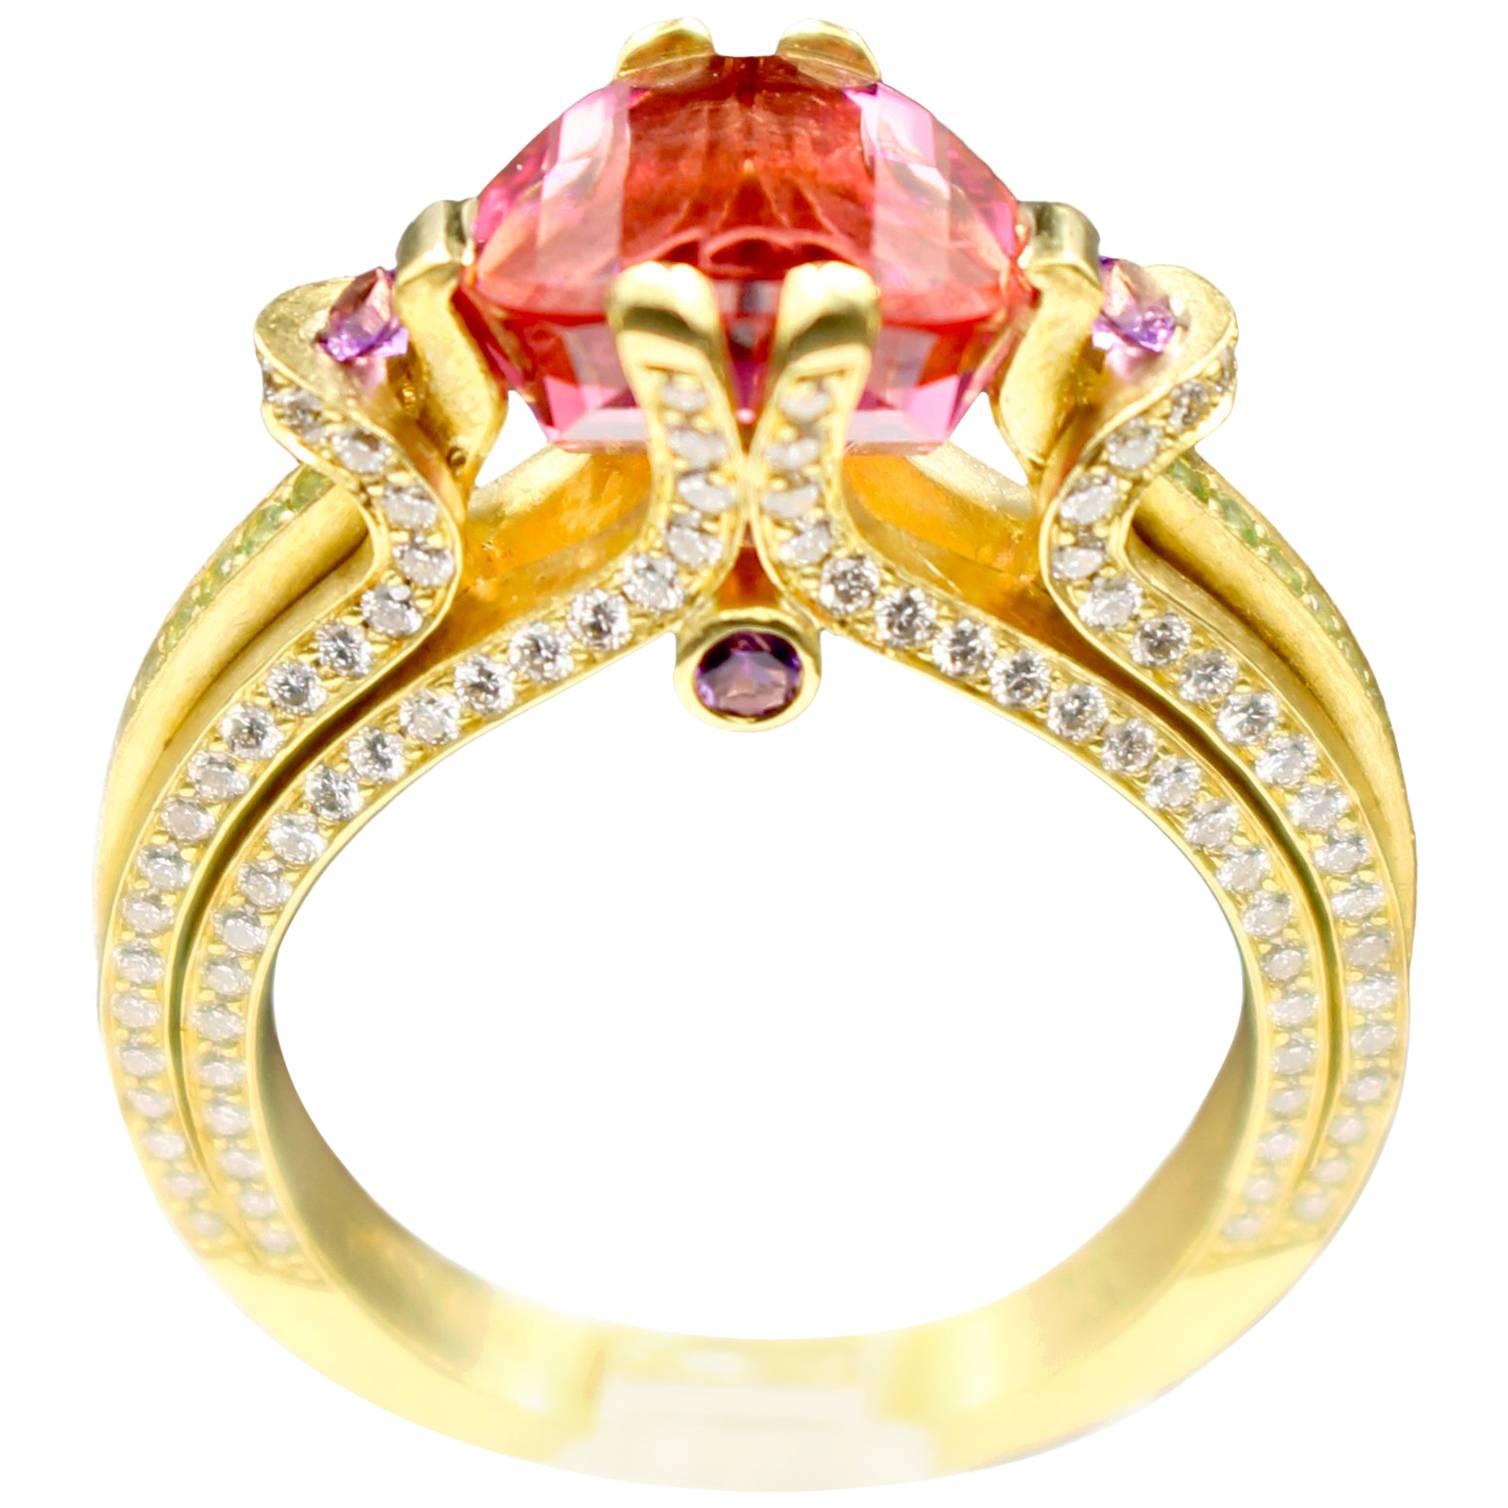 Ryan Roberts, Rubellite Tourmaline Ring, 18 Karat Gold, Diamond For Sale